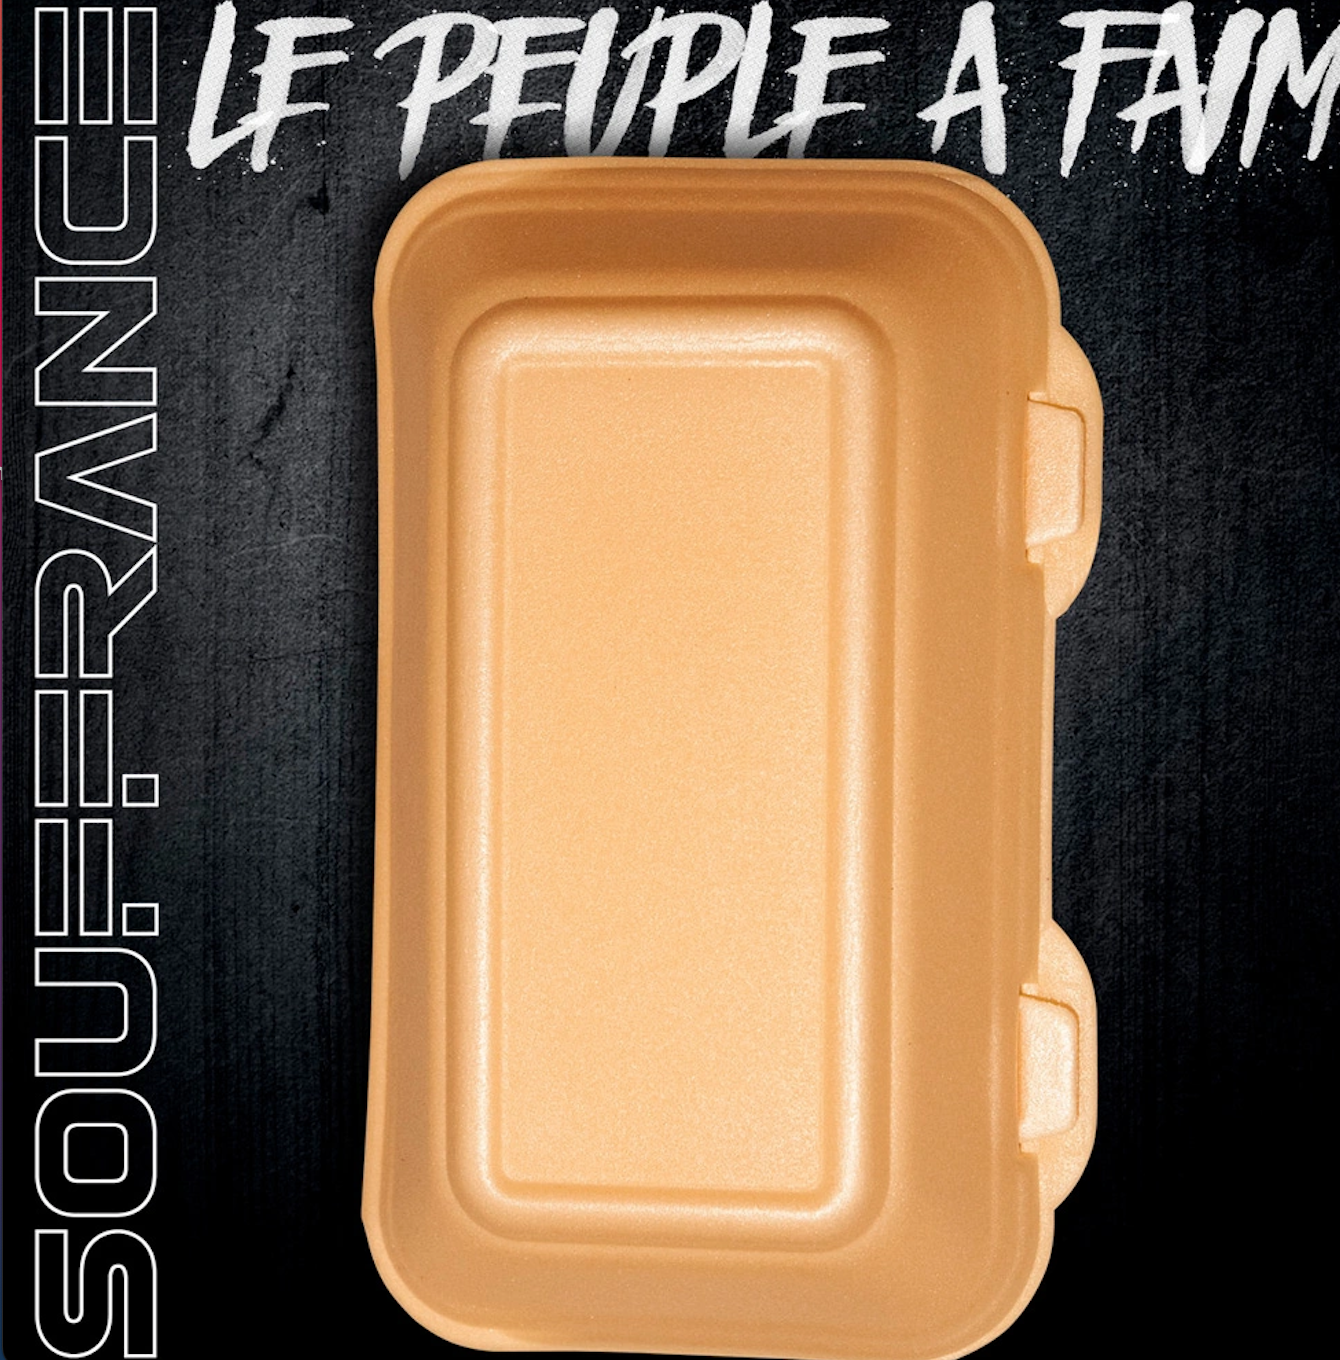 Album Vinyle Souffrance - Le peuple à faim de l'uzine sur Scredboutique.com